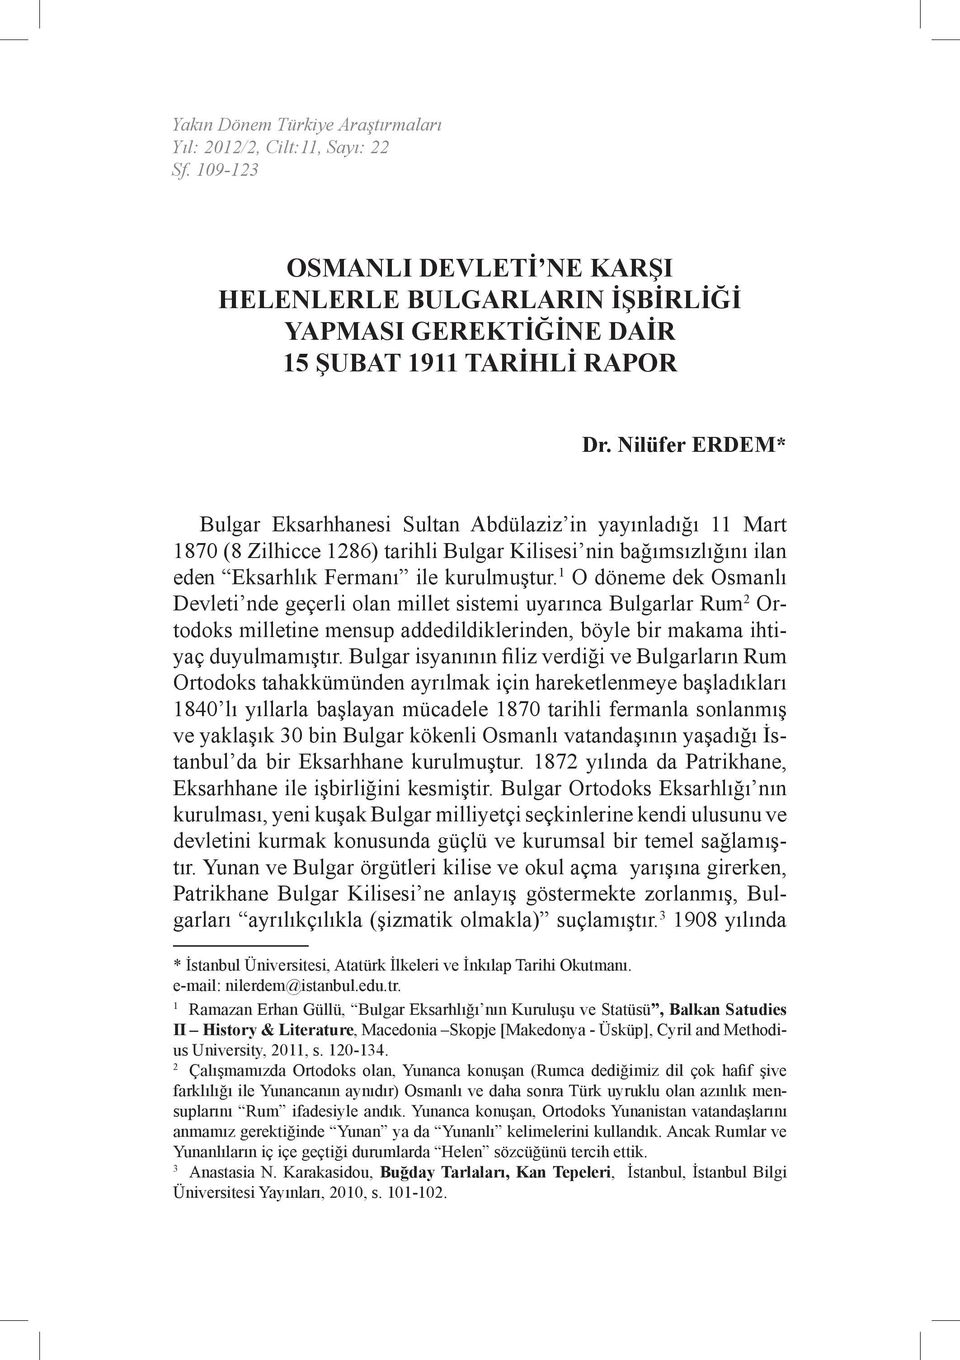 1 O döneme dek Osmanlı Devleti nde geçerli olan millet sistemi uyarınca Bulgarlar Rum 2 Ortodoks milletine mensup addedildiklerinden, böyle bir makama ihtiyaç duyulmamıştır.